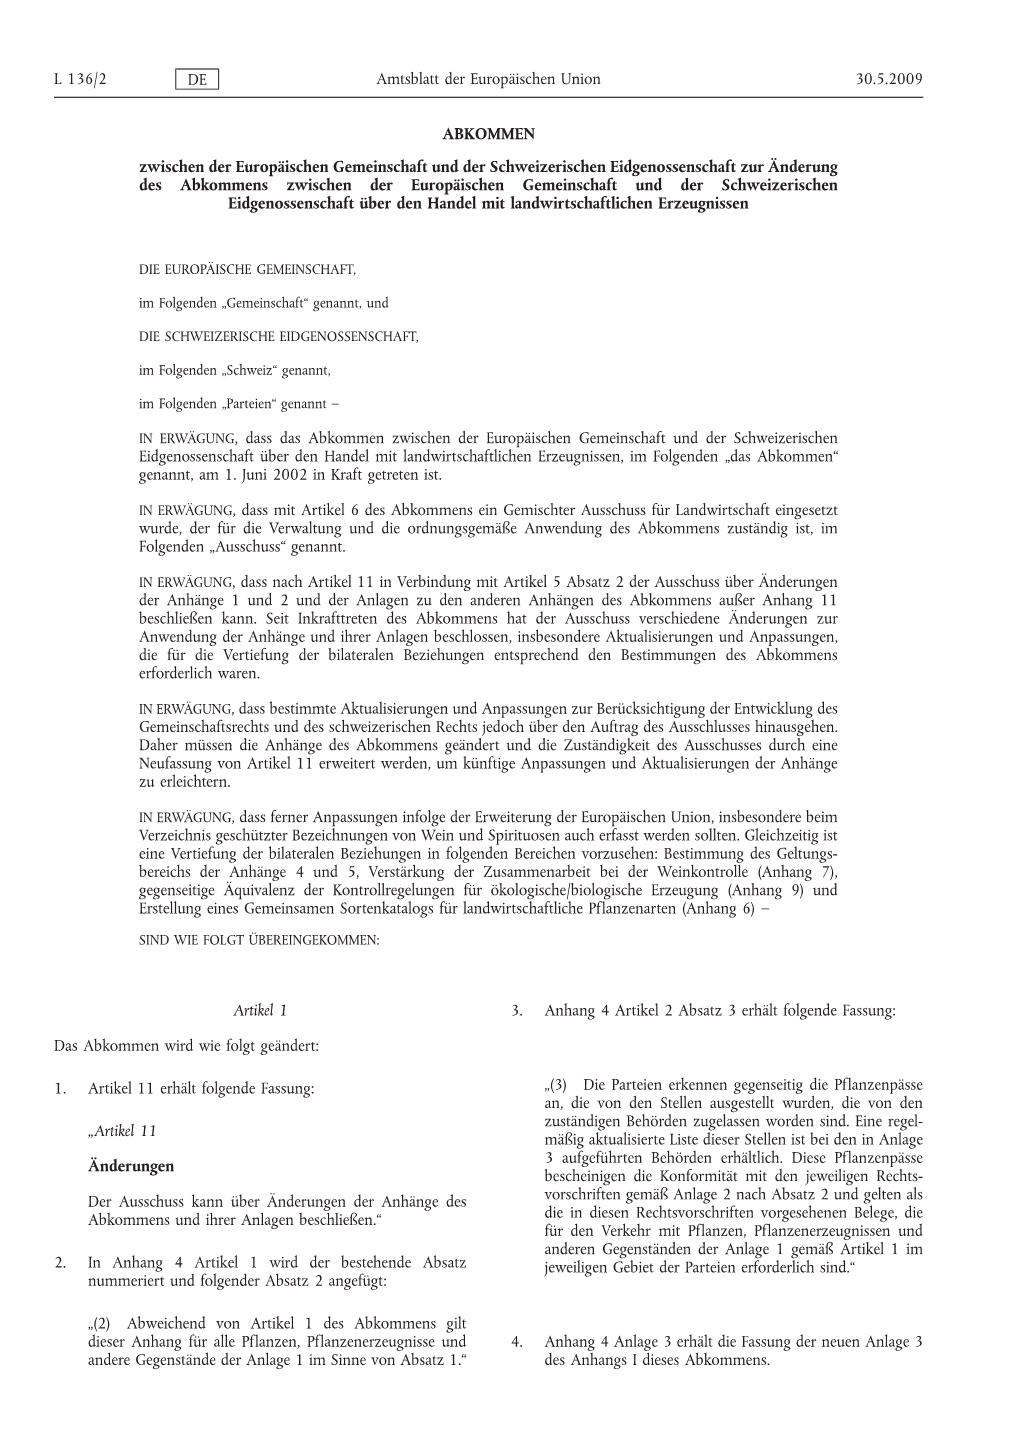 Abkommen Zwischen Der Europäischen Gemeinschaft Und Der Schweizerischen Eidgenossenschaft Zur Änderung Des Abkommens Zwischen